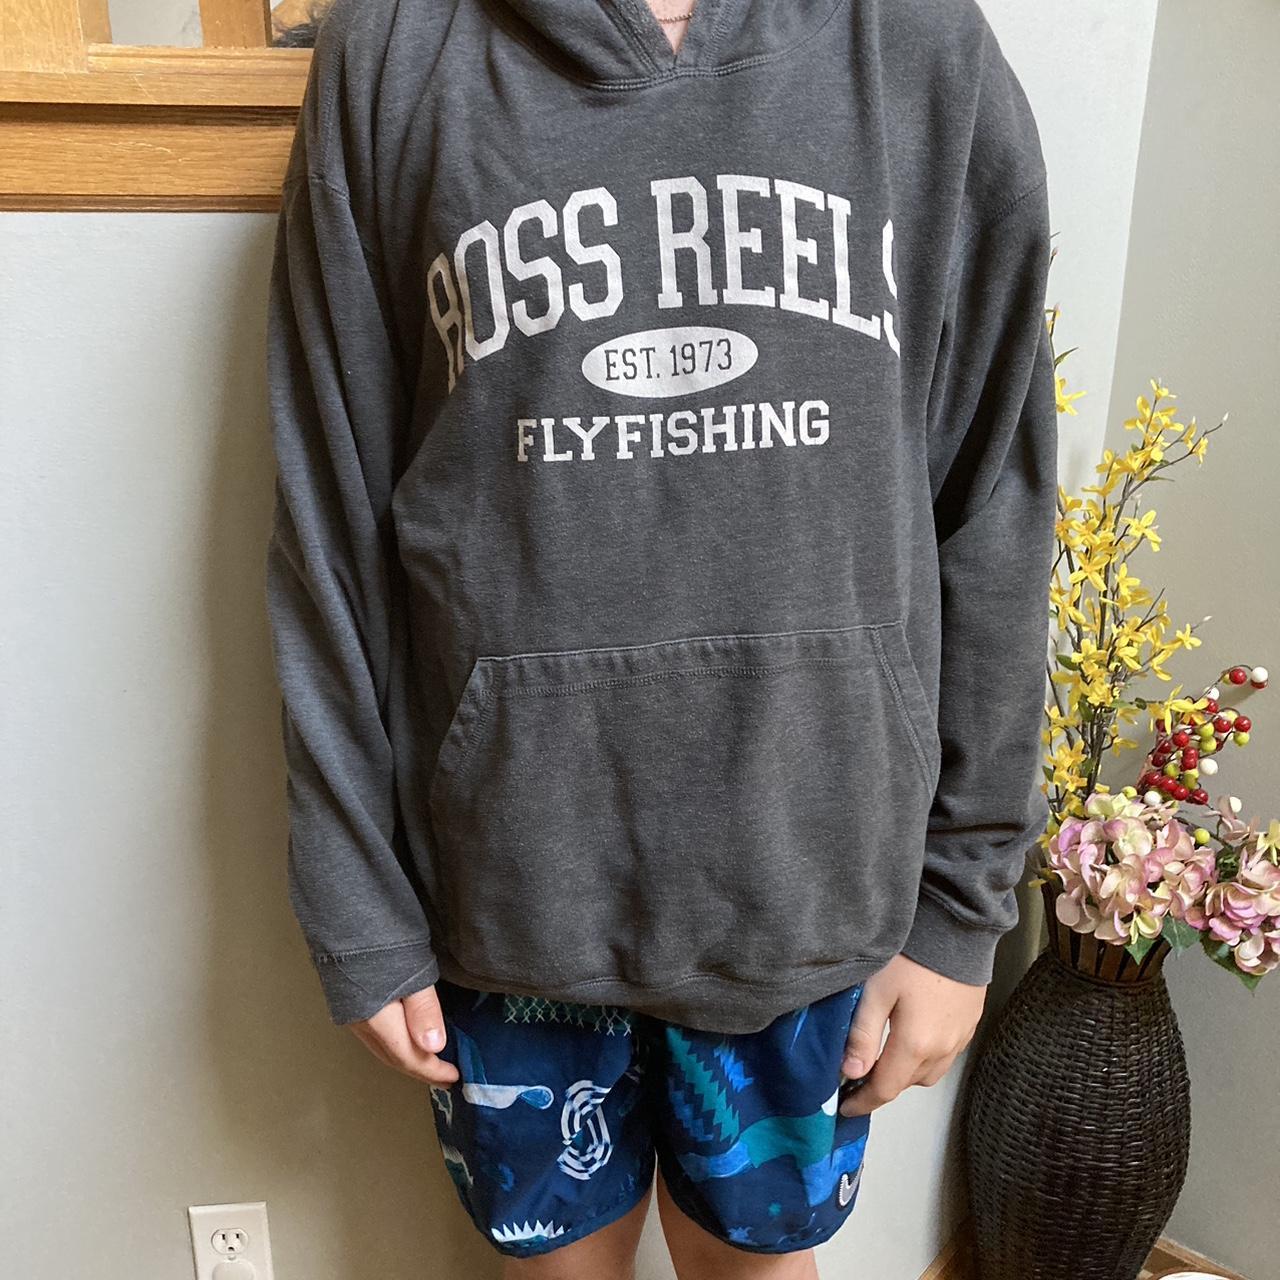 Ross reels fly fishing dark gray, hoodie size - Depop